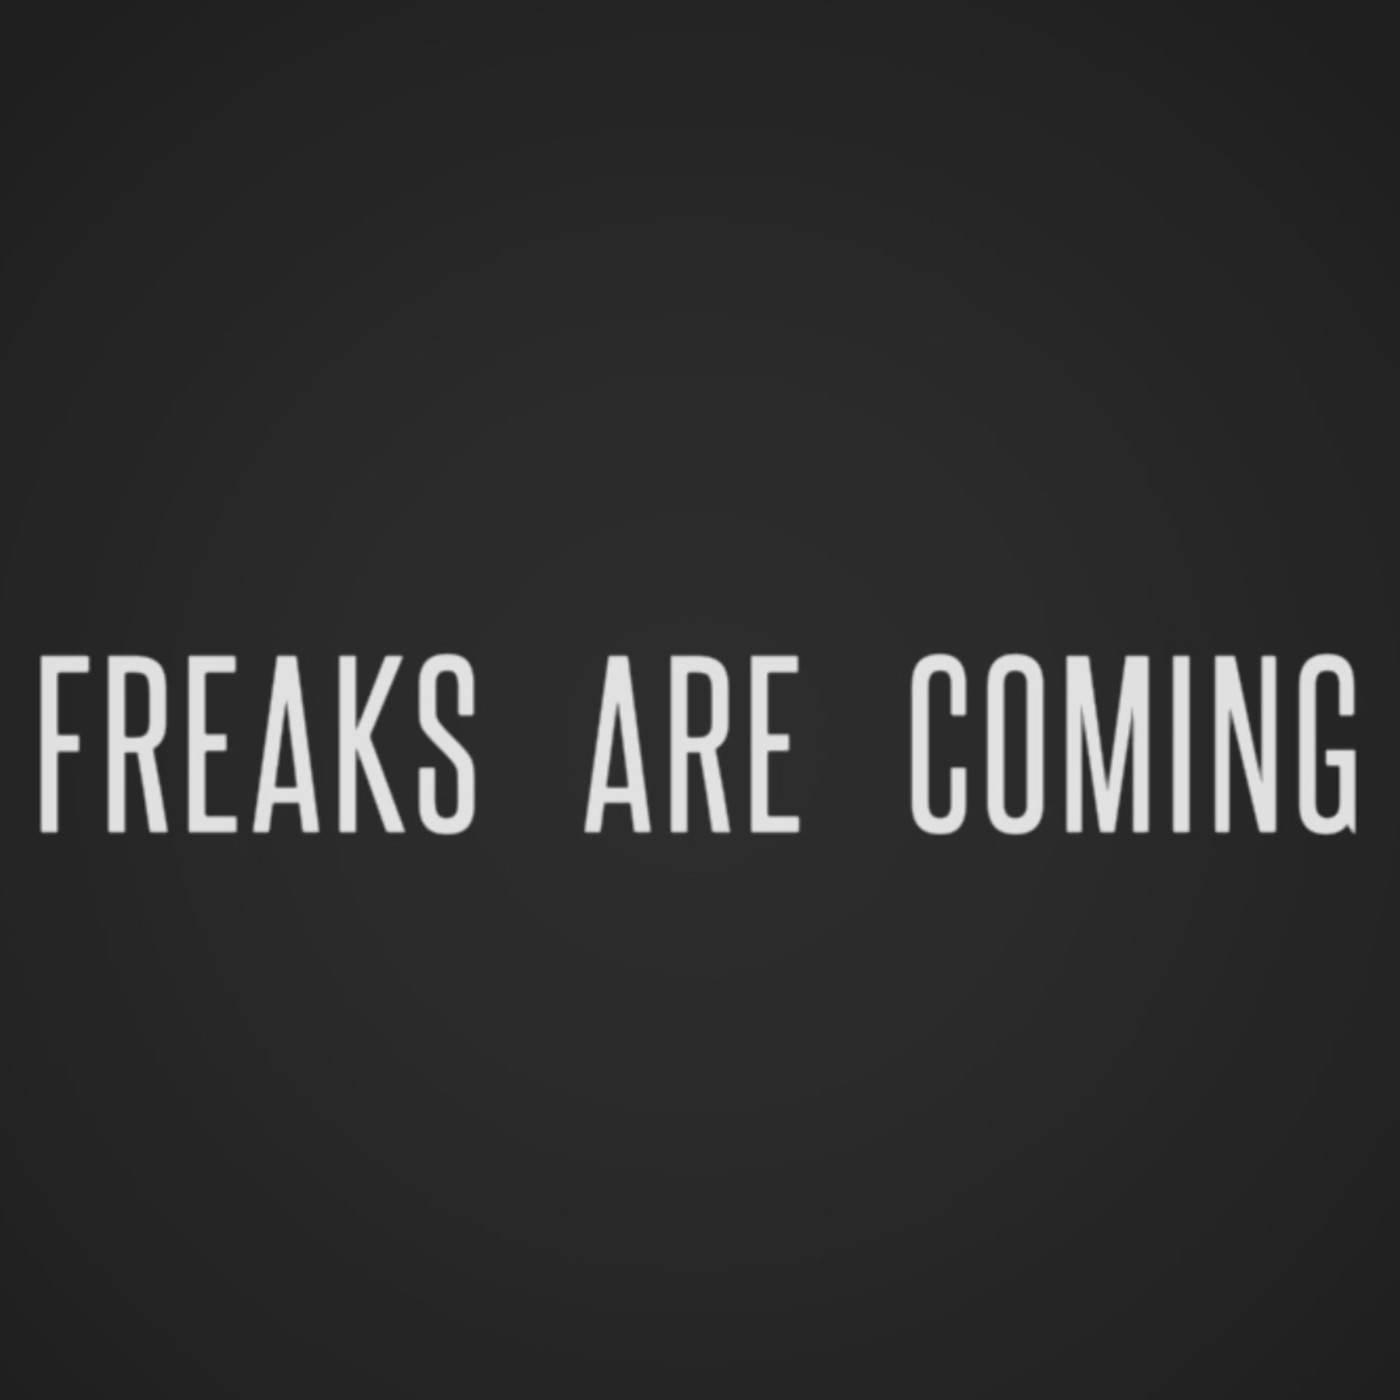 Freaks are coming - Podcast - Traducciones y comunidad